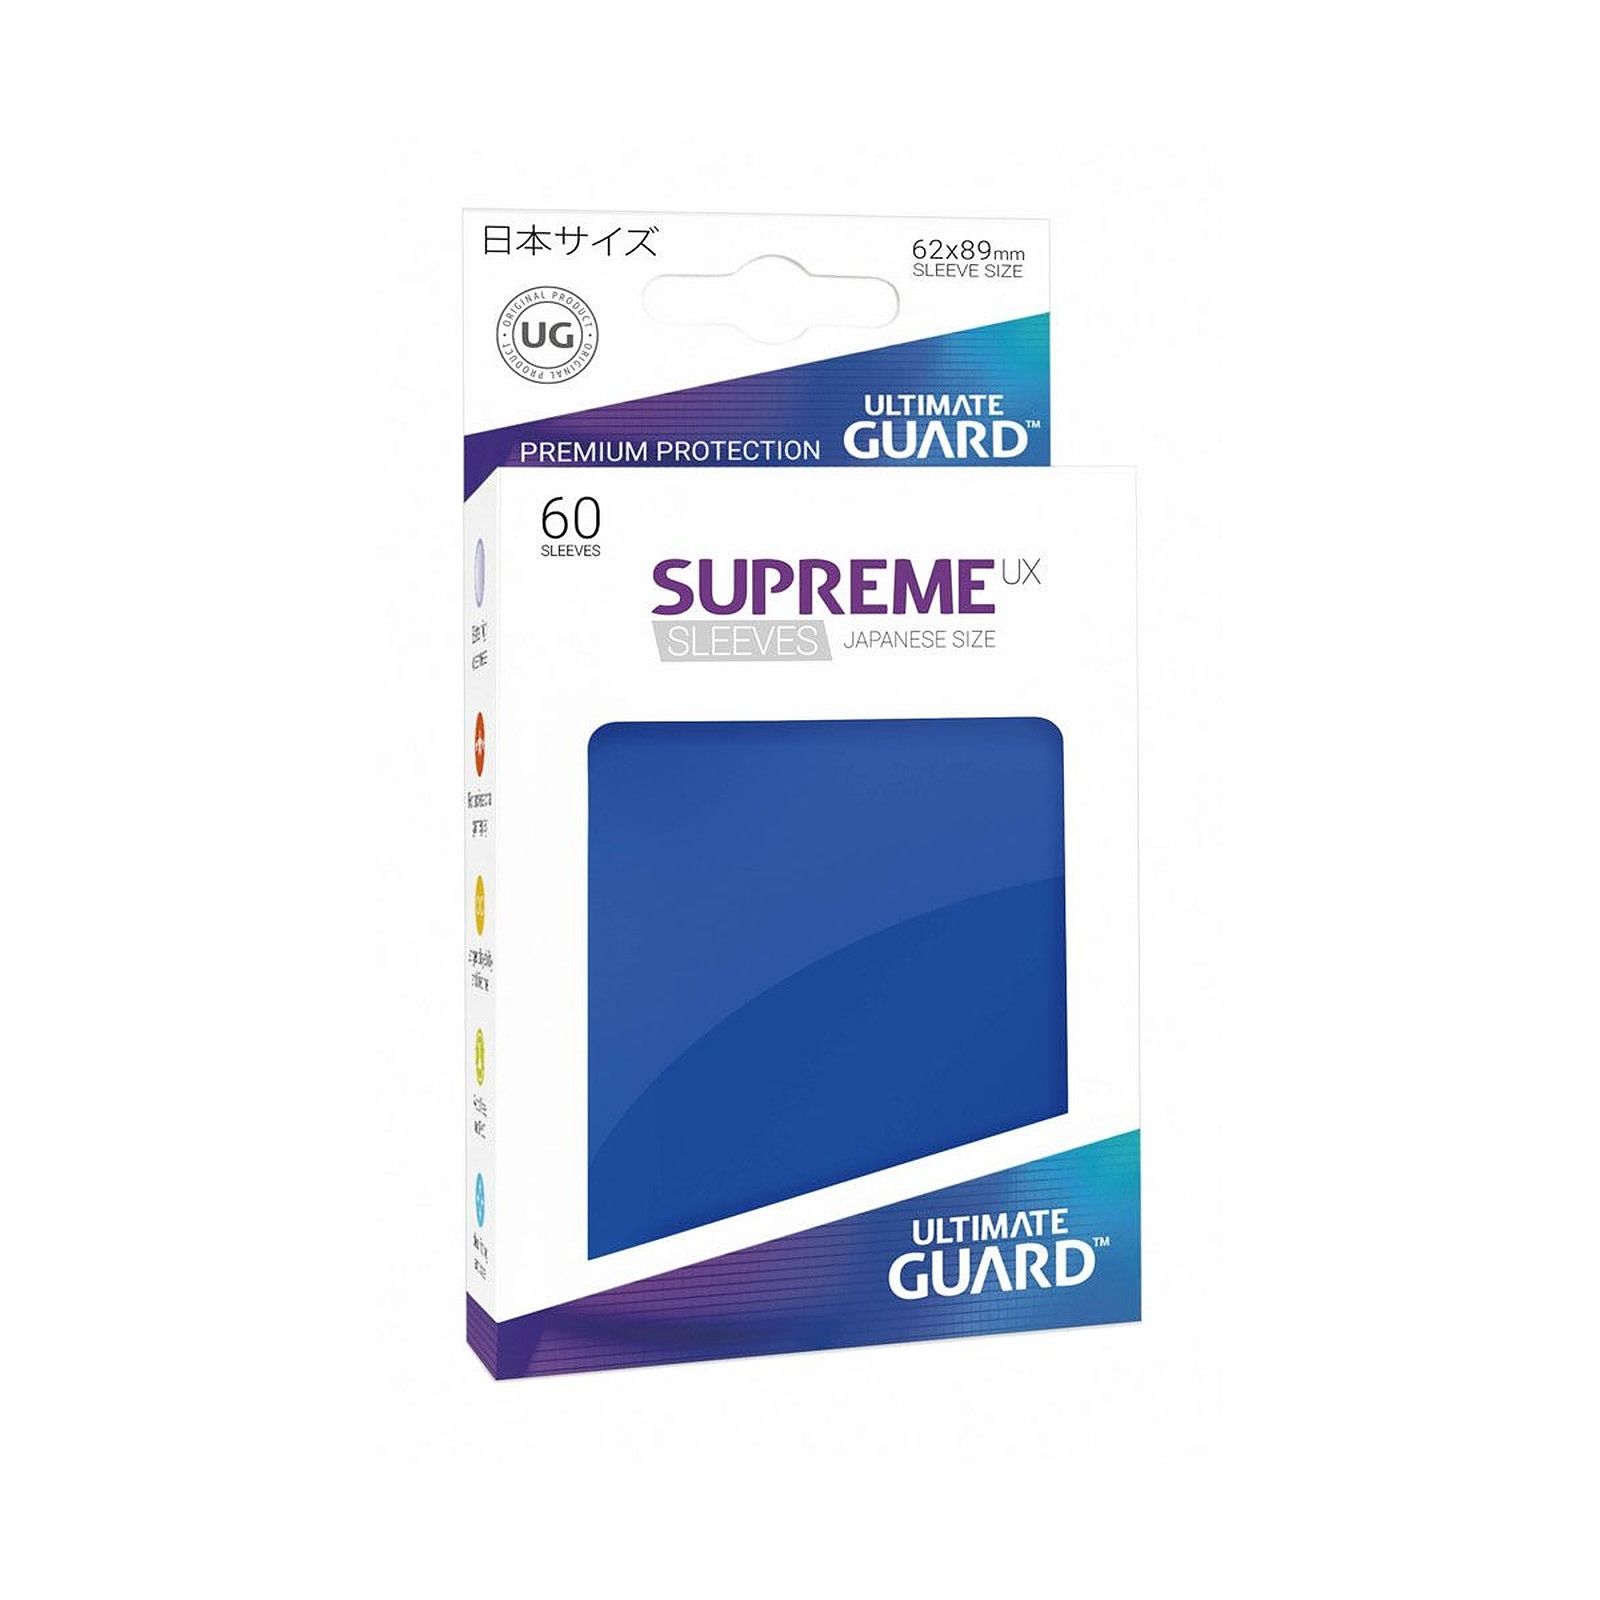 Ultimate Guard - 60 pochettes Supreme UX Sleeves format japonais Bleu - Accessoire jeux Ultimate Guard